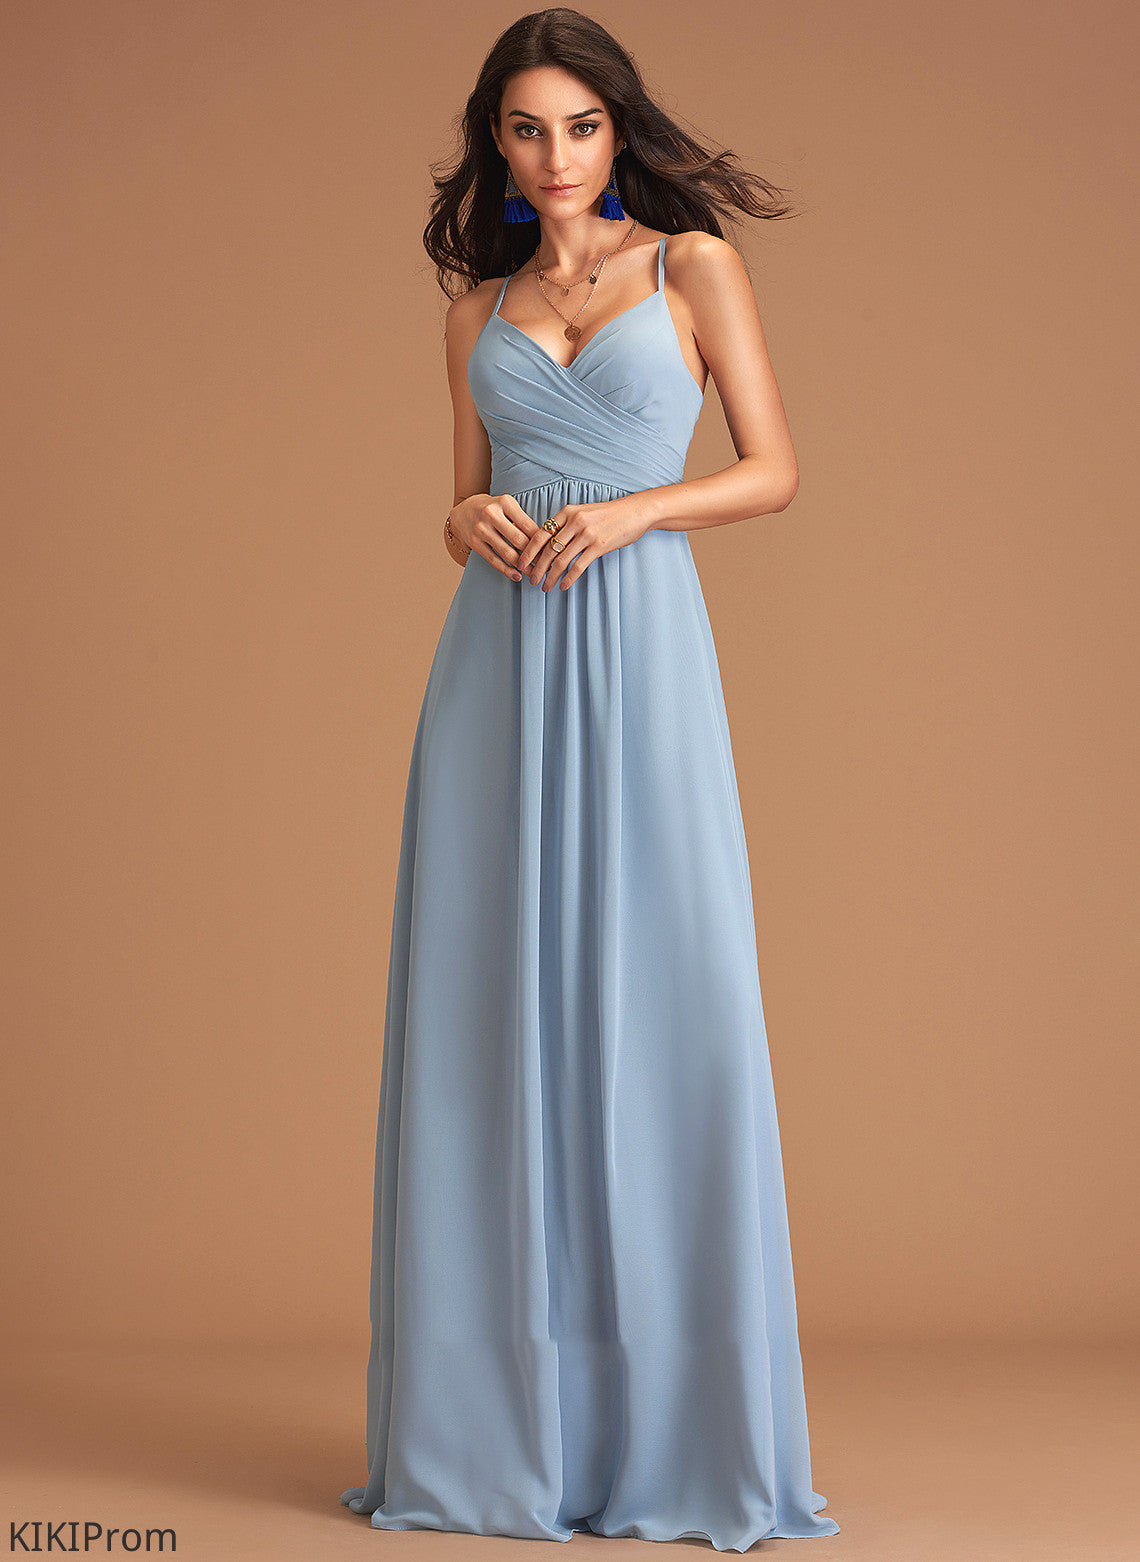 Embellishment Length Silhouette Ruffle V-neck Floor-Length Fabric A-Line Neckline Nyla Bridesmaid Dresses